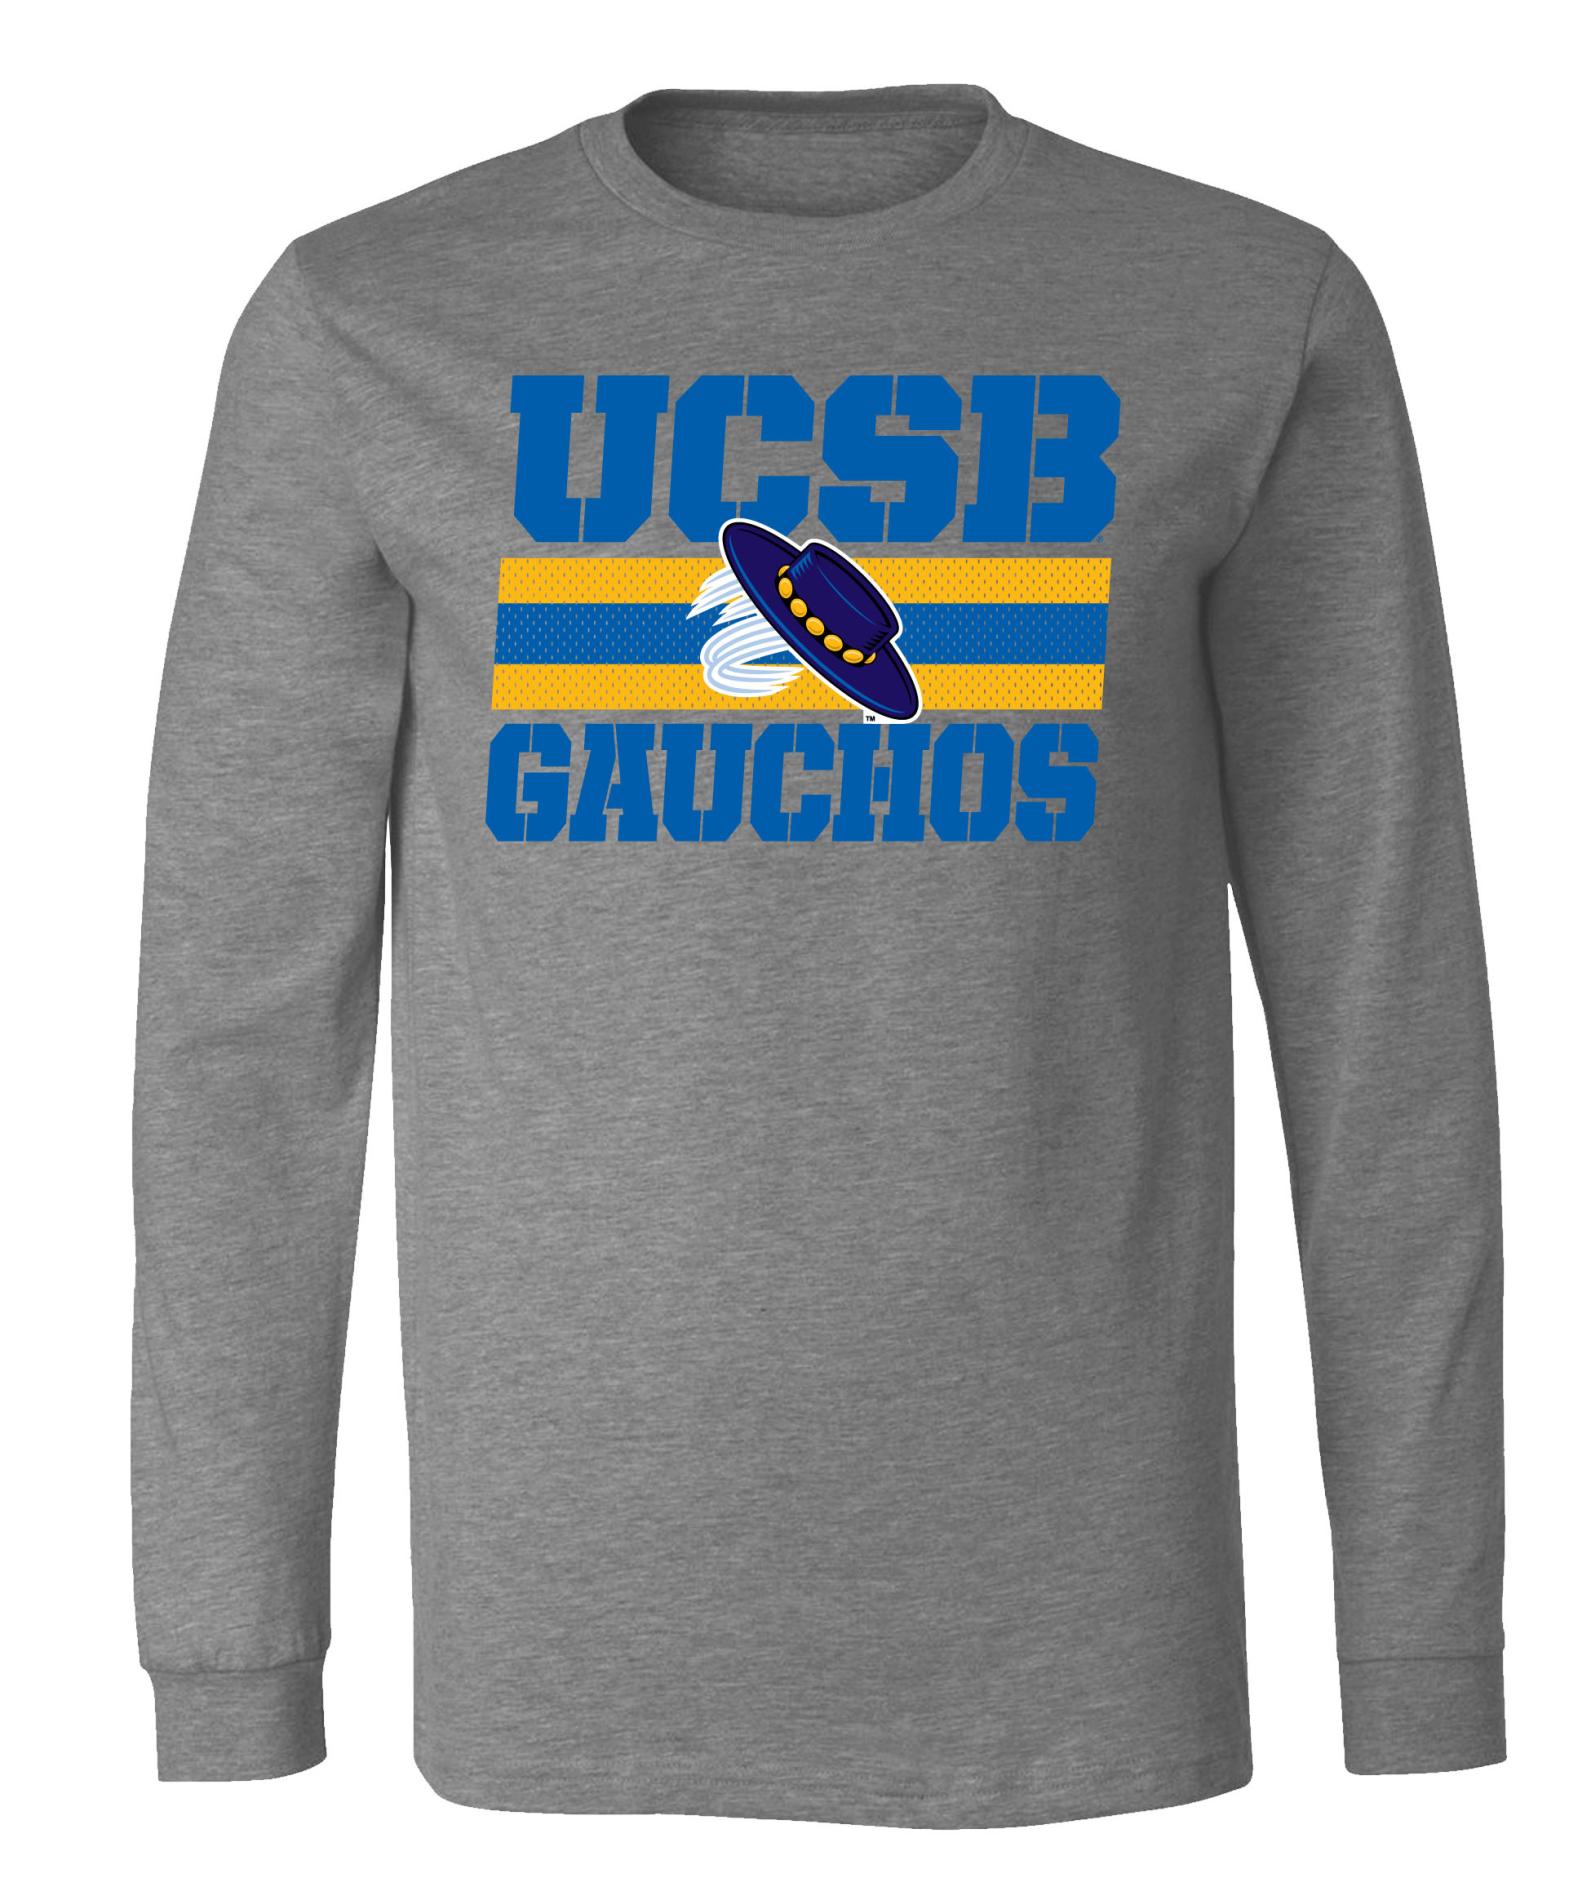 NCAA Boys' Long-Sleeve T-Shirt - UC Santa Barbara Gauchos